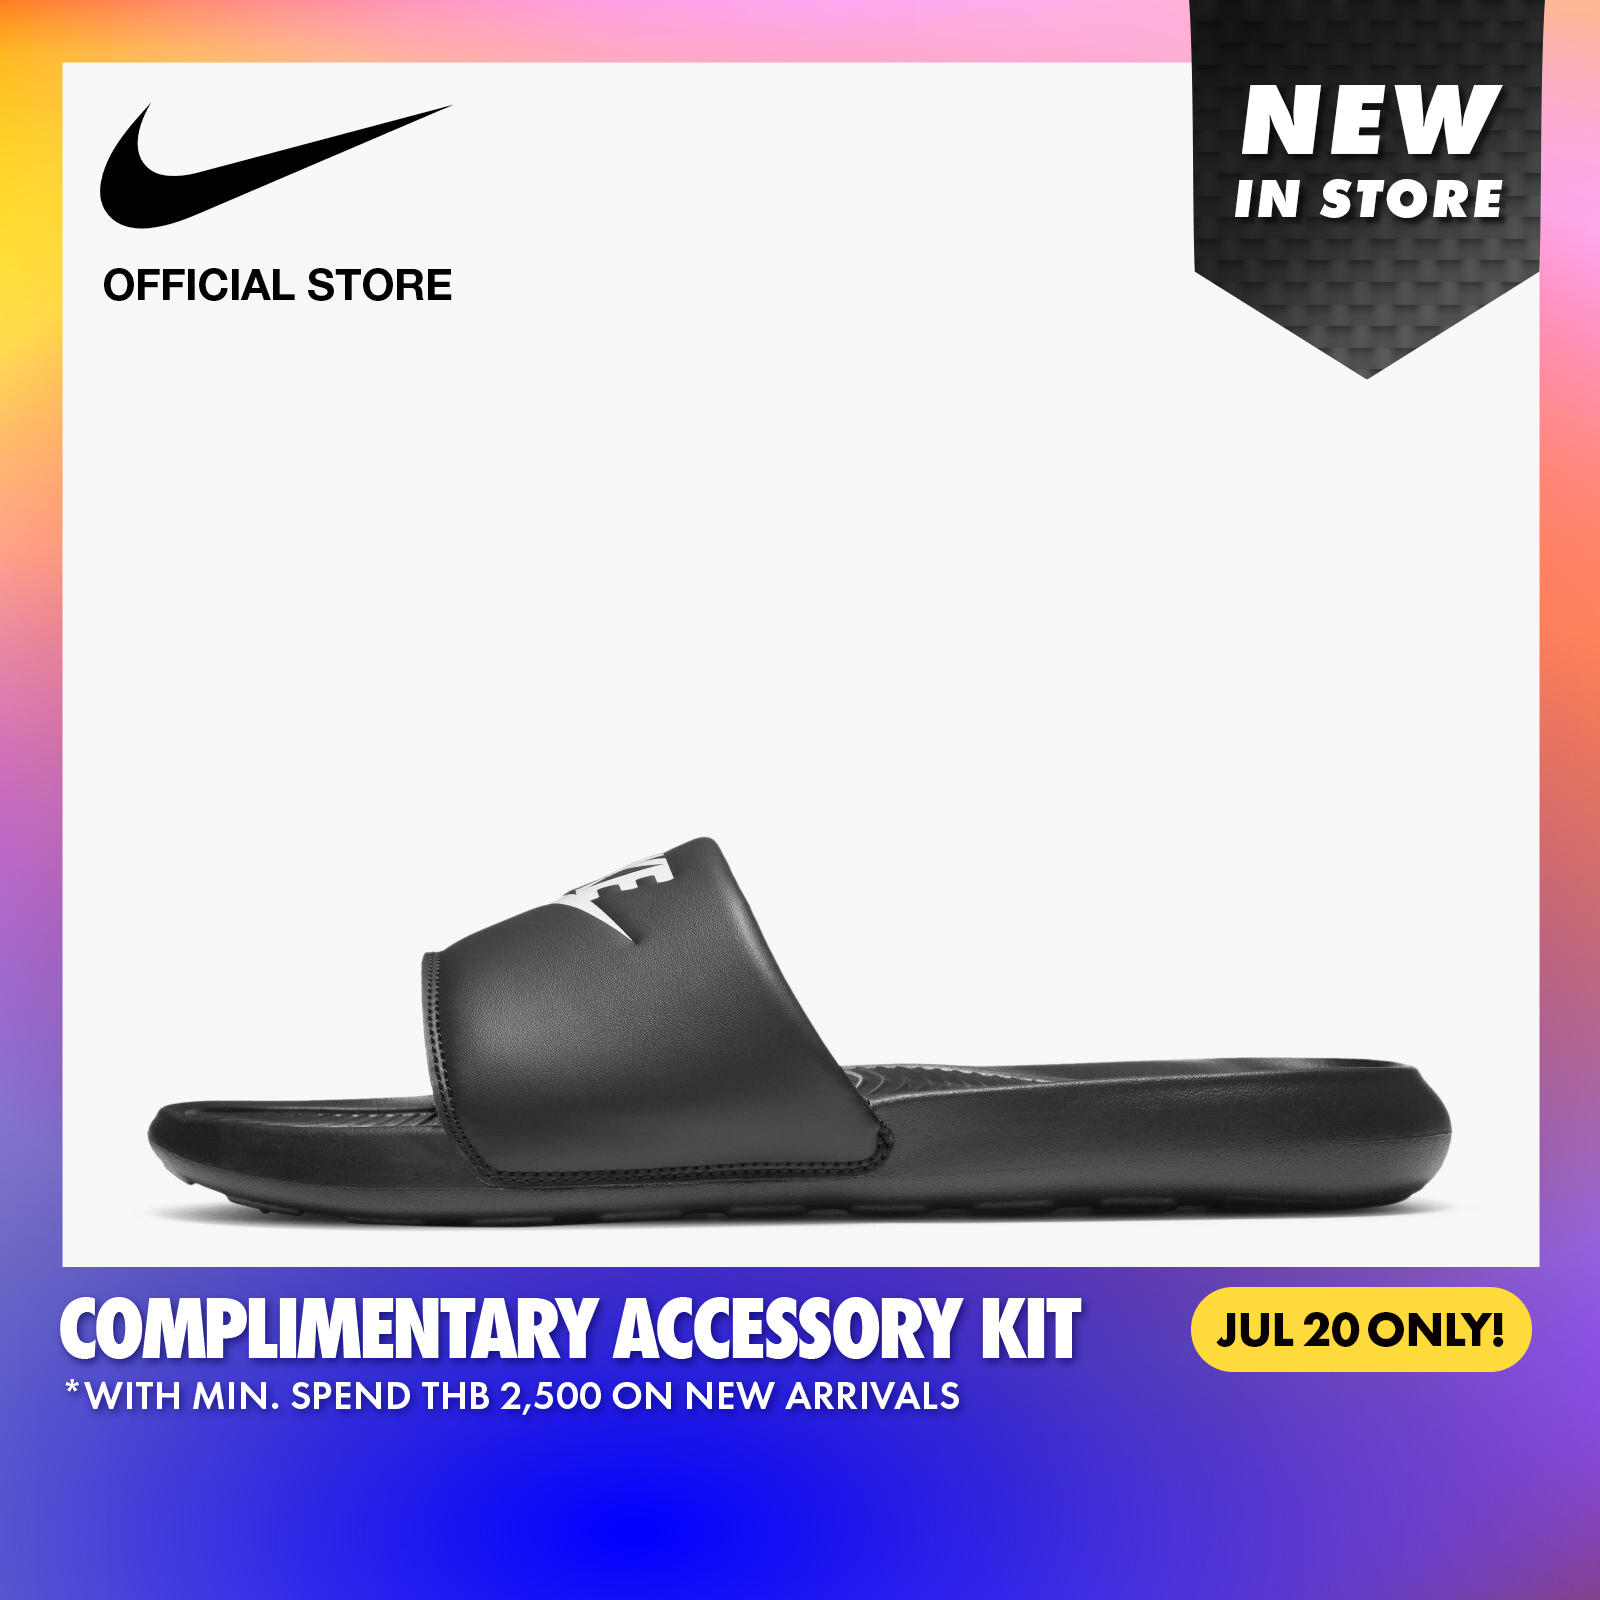 Nike Men's Victori One Slides - Black ไนกี้ รองเท้าแตะผู้ชายแบบสวม วิคตอริ วัน - สีดำ